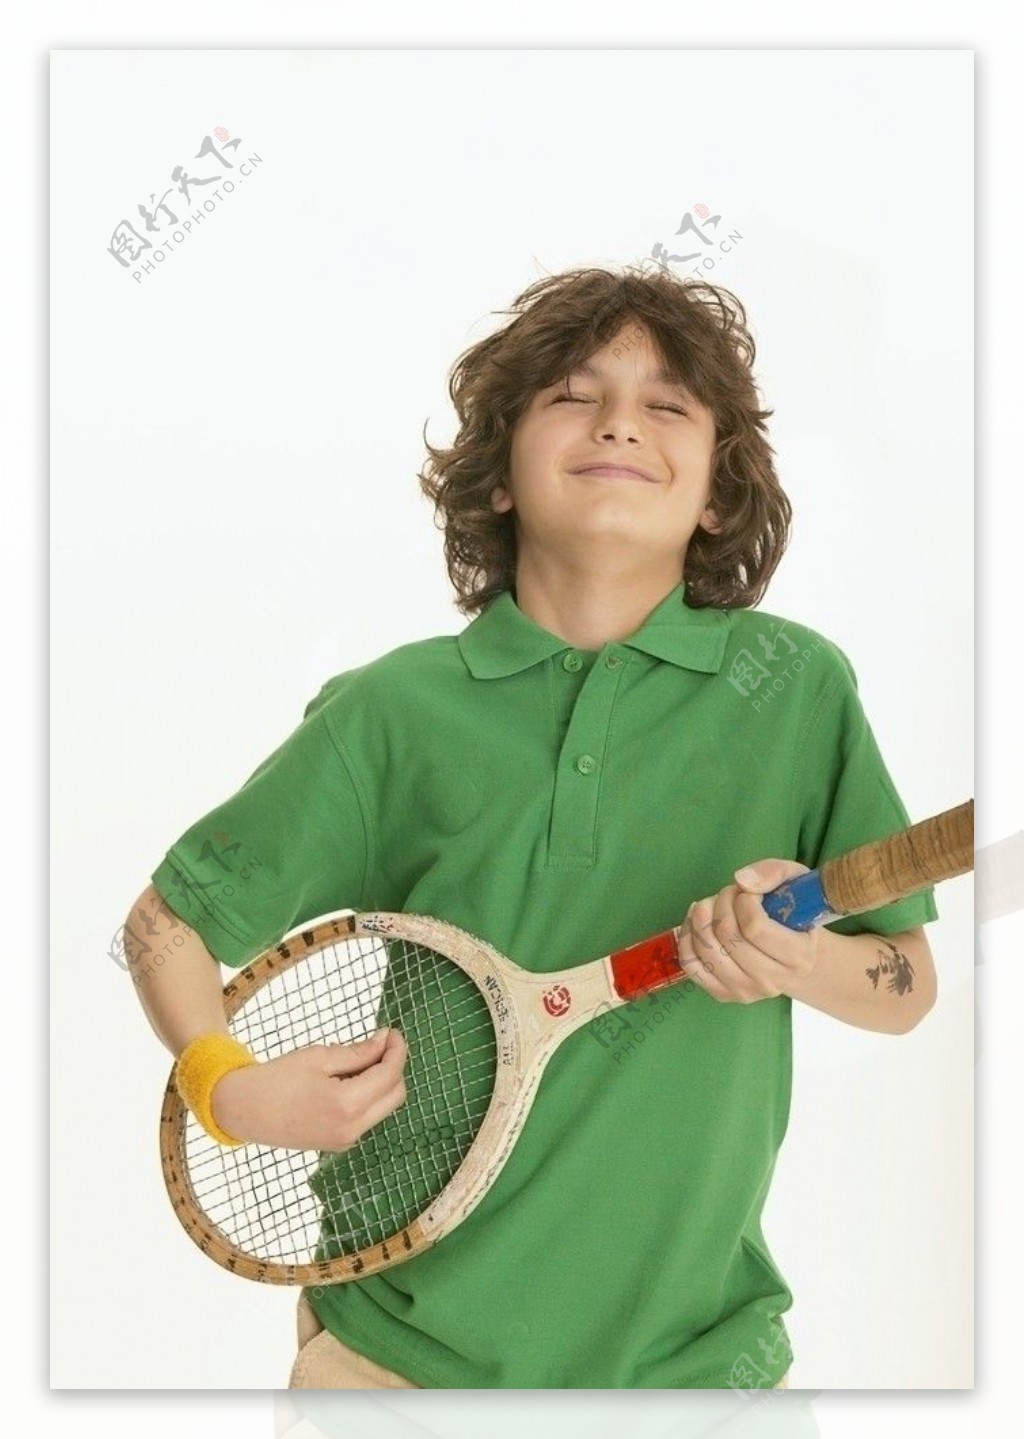 拿羽毛球拍当吉他弹的快乐小男孩图片